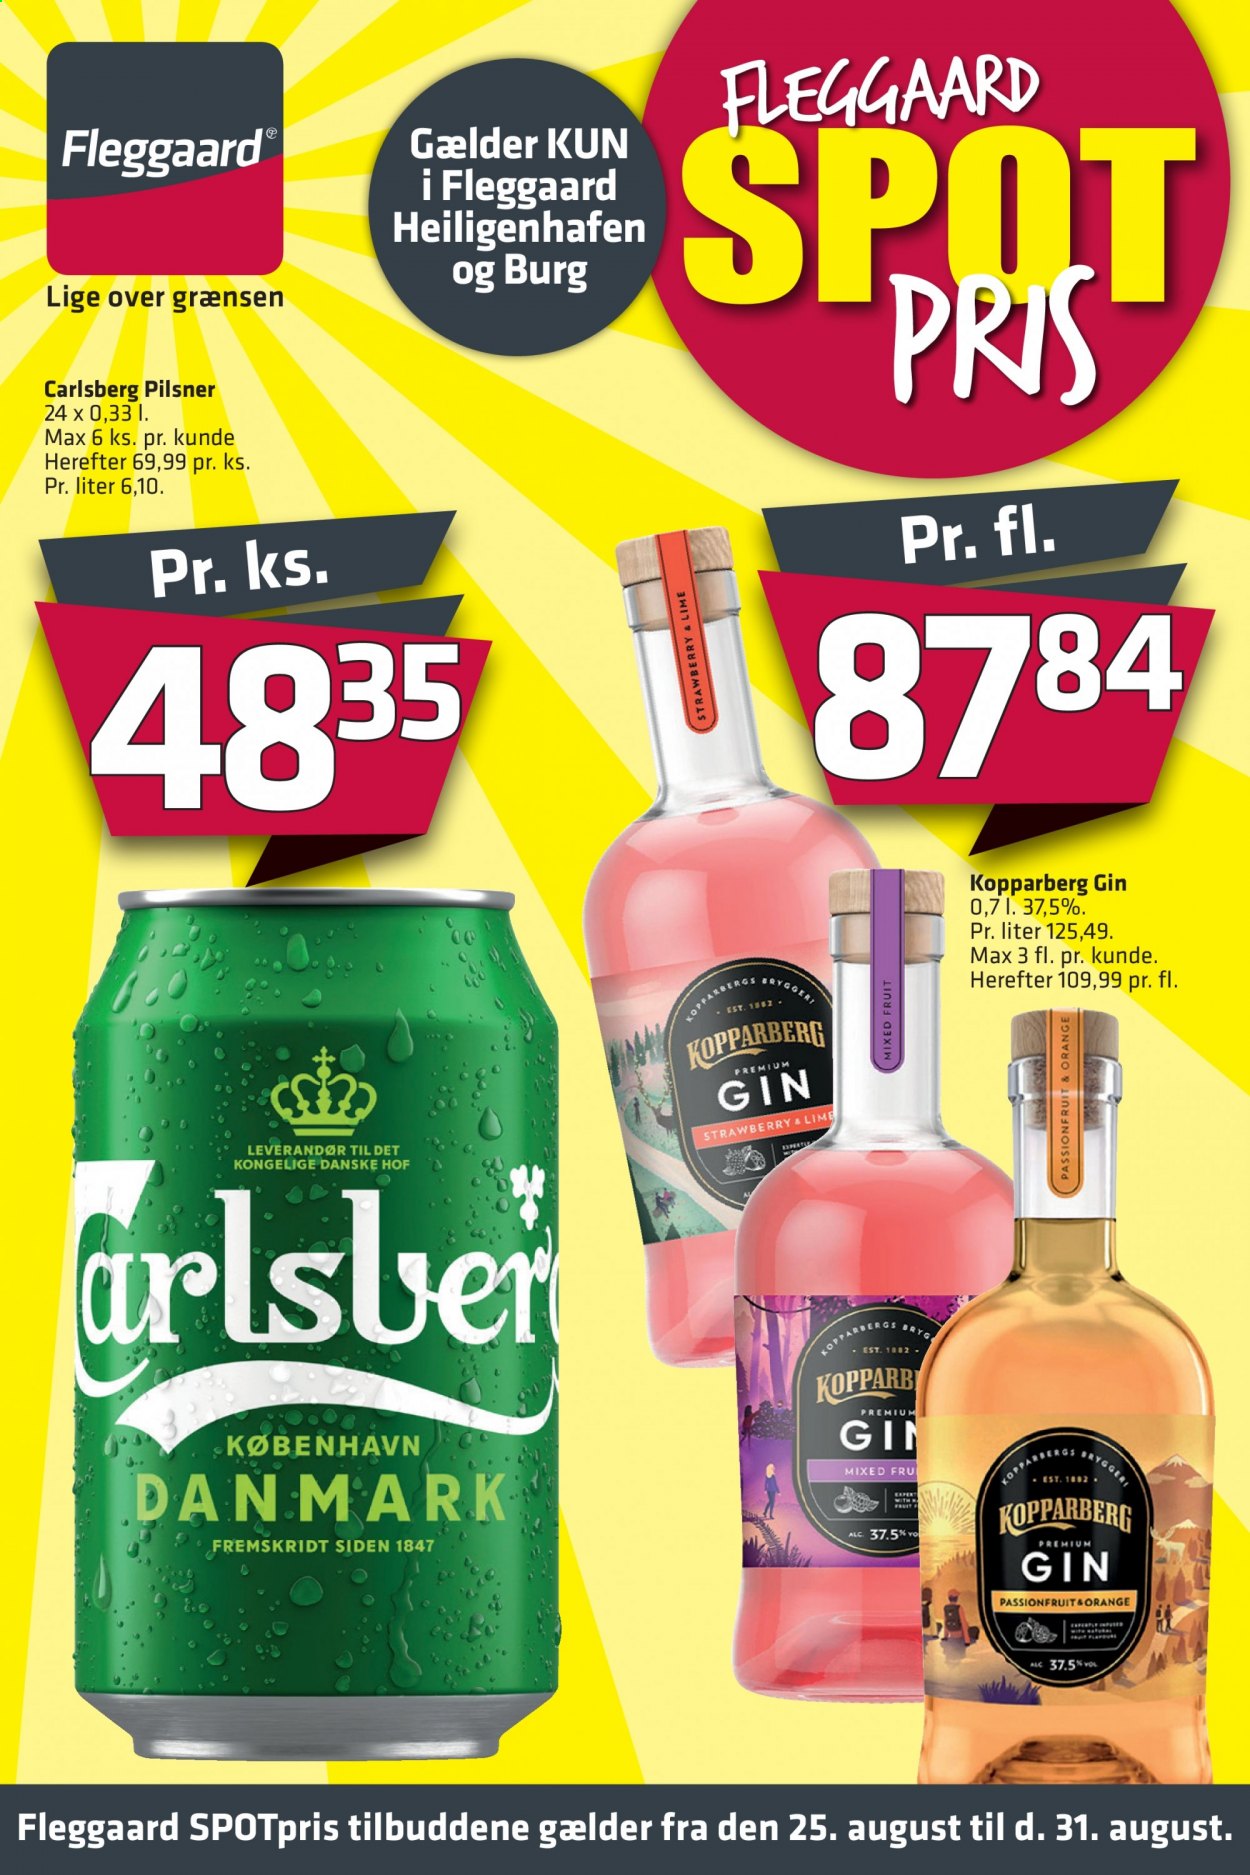 thumbnail - Fleggaard tilbud  - 25.8.2021 - 31.8.2021 - tilbudsprodukter - Lime, Carlsberg, øl, gin. Side 1.